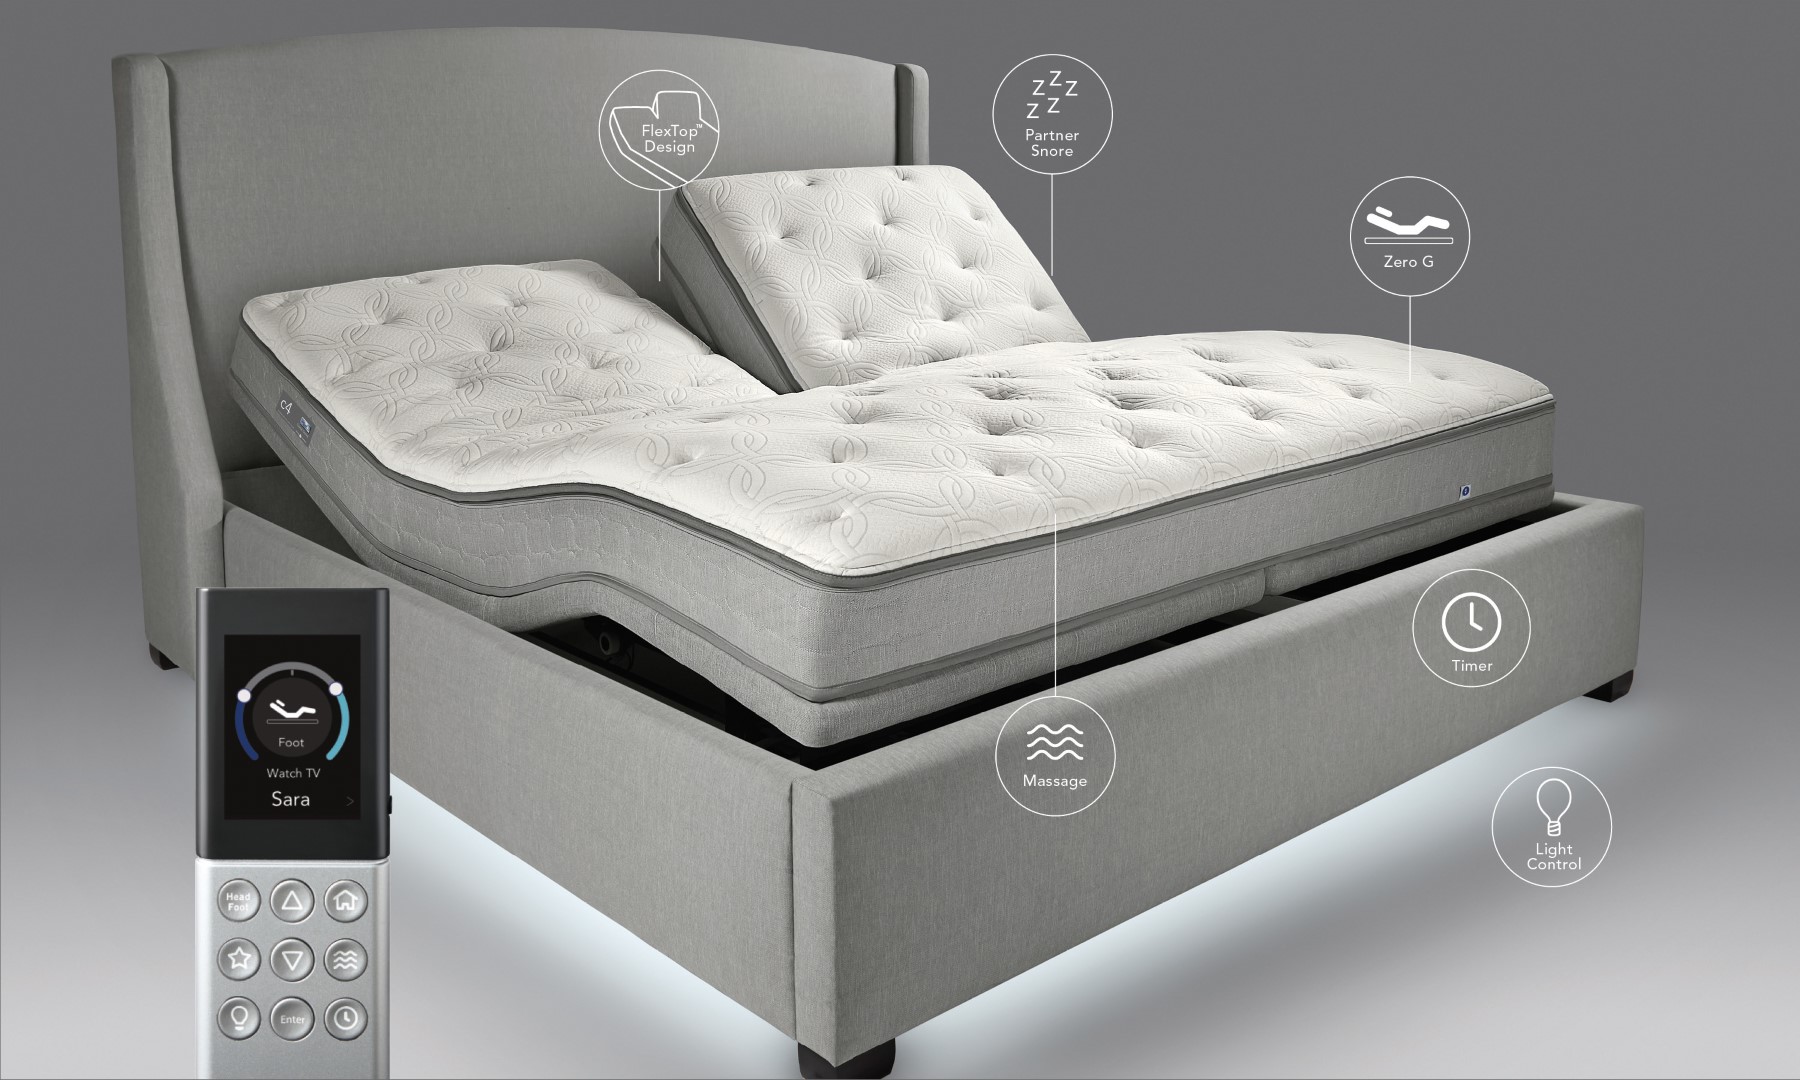 sleep number twin mattress dimensions 39 x75